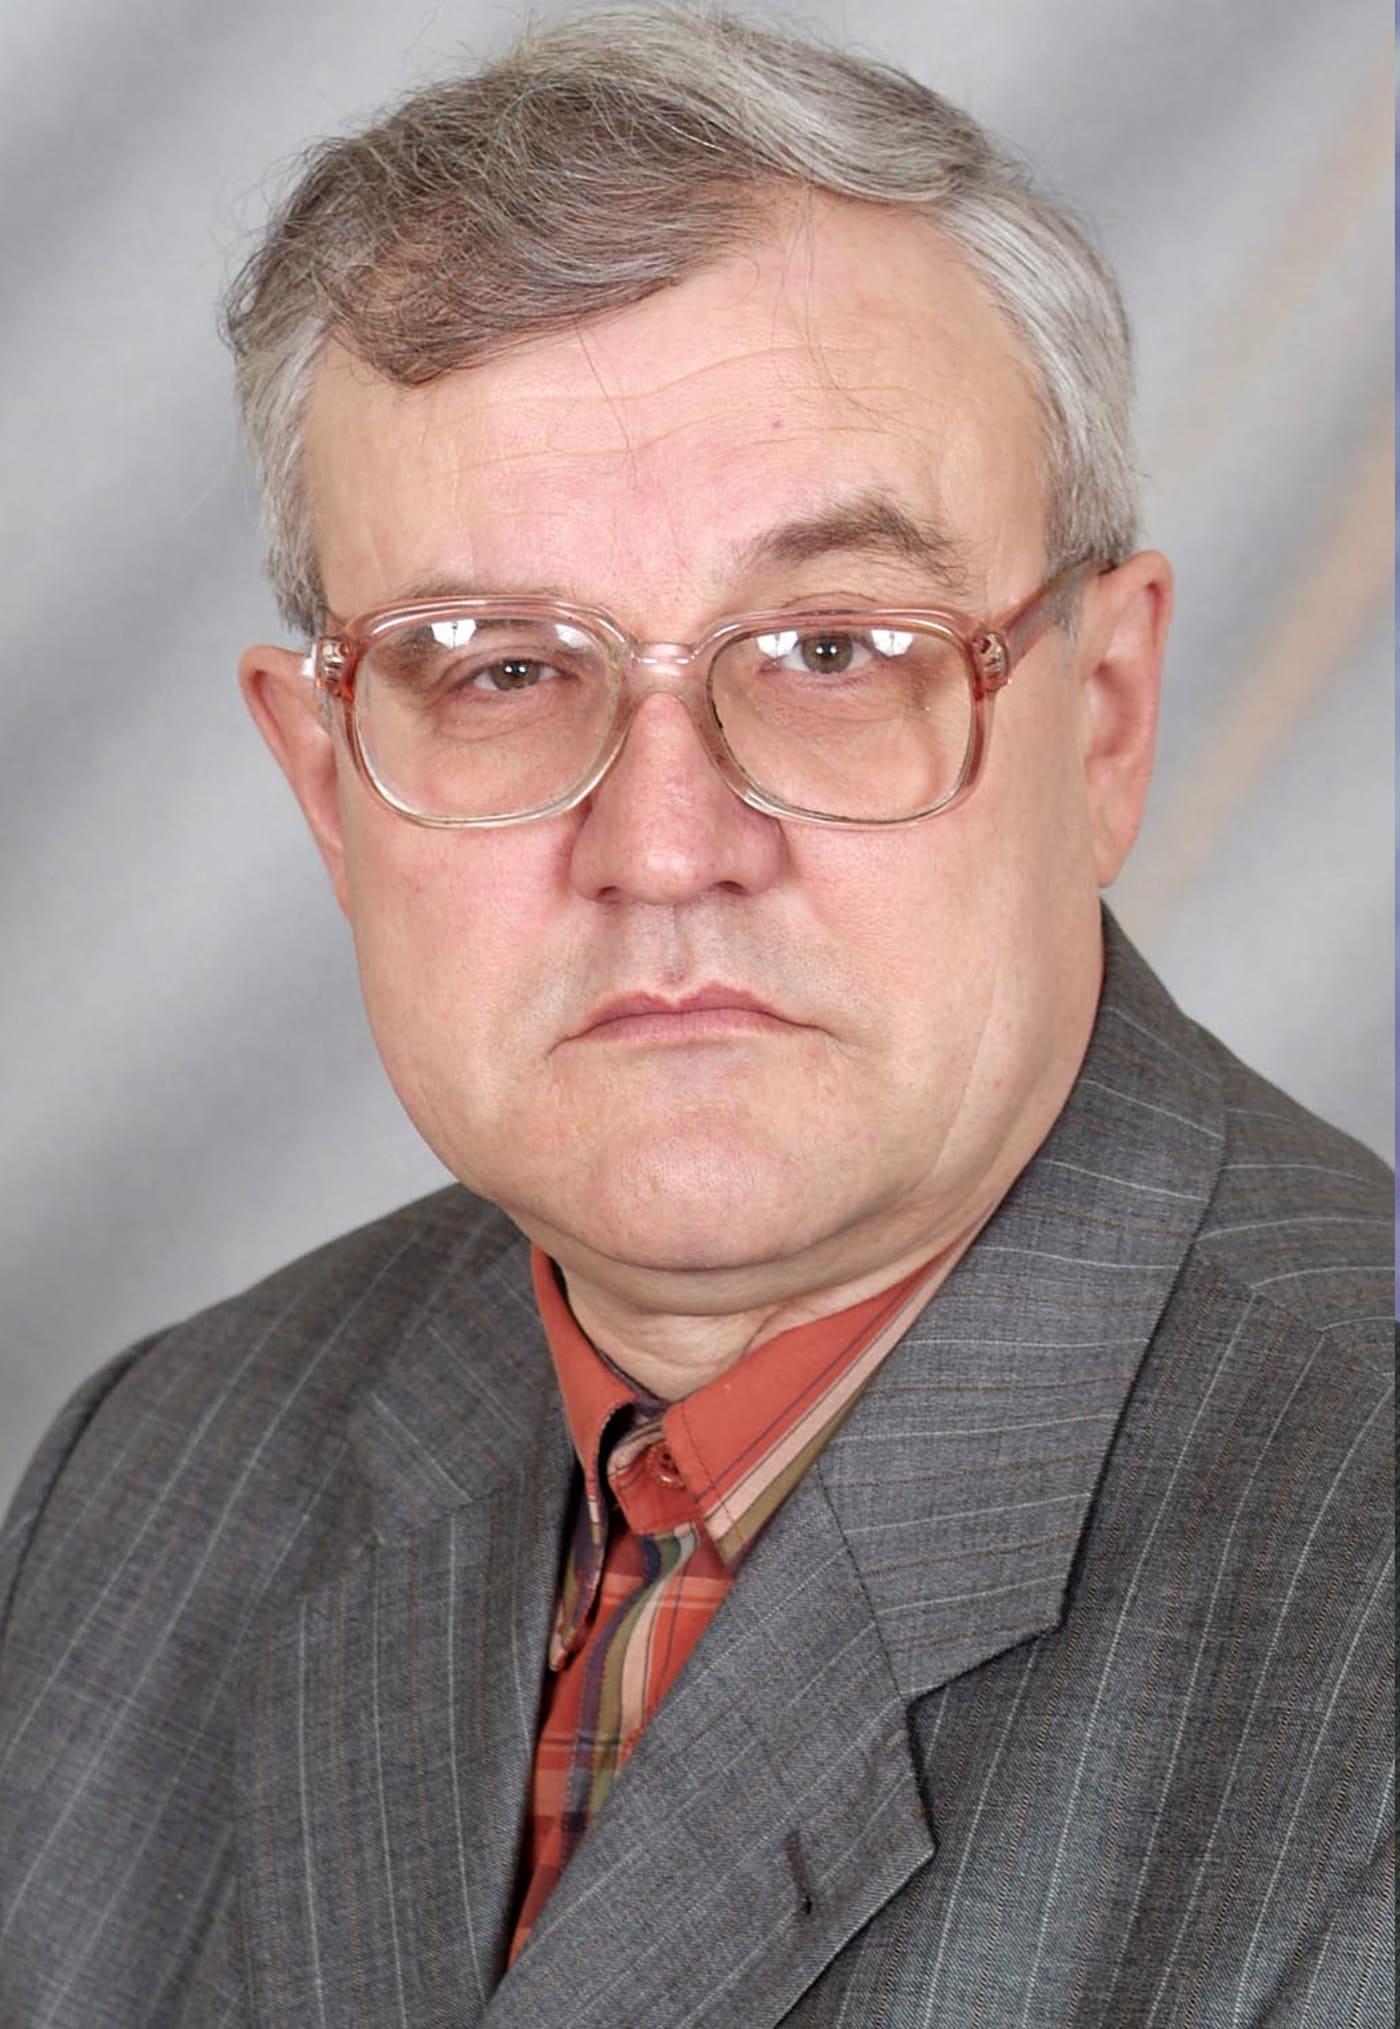 Емельянов Валерий Михайлович- лектор по физики